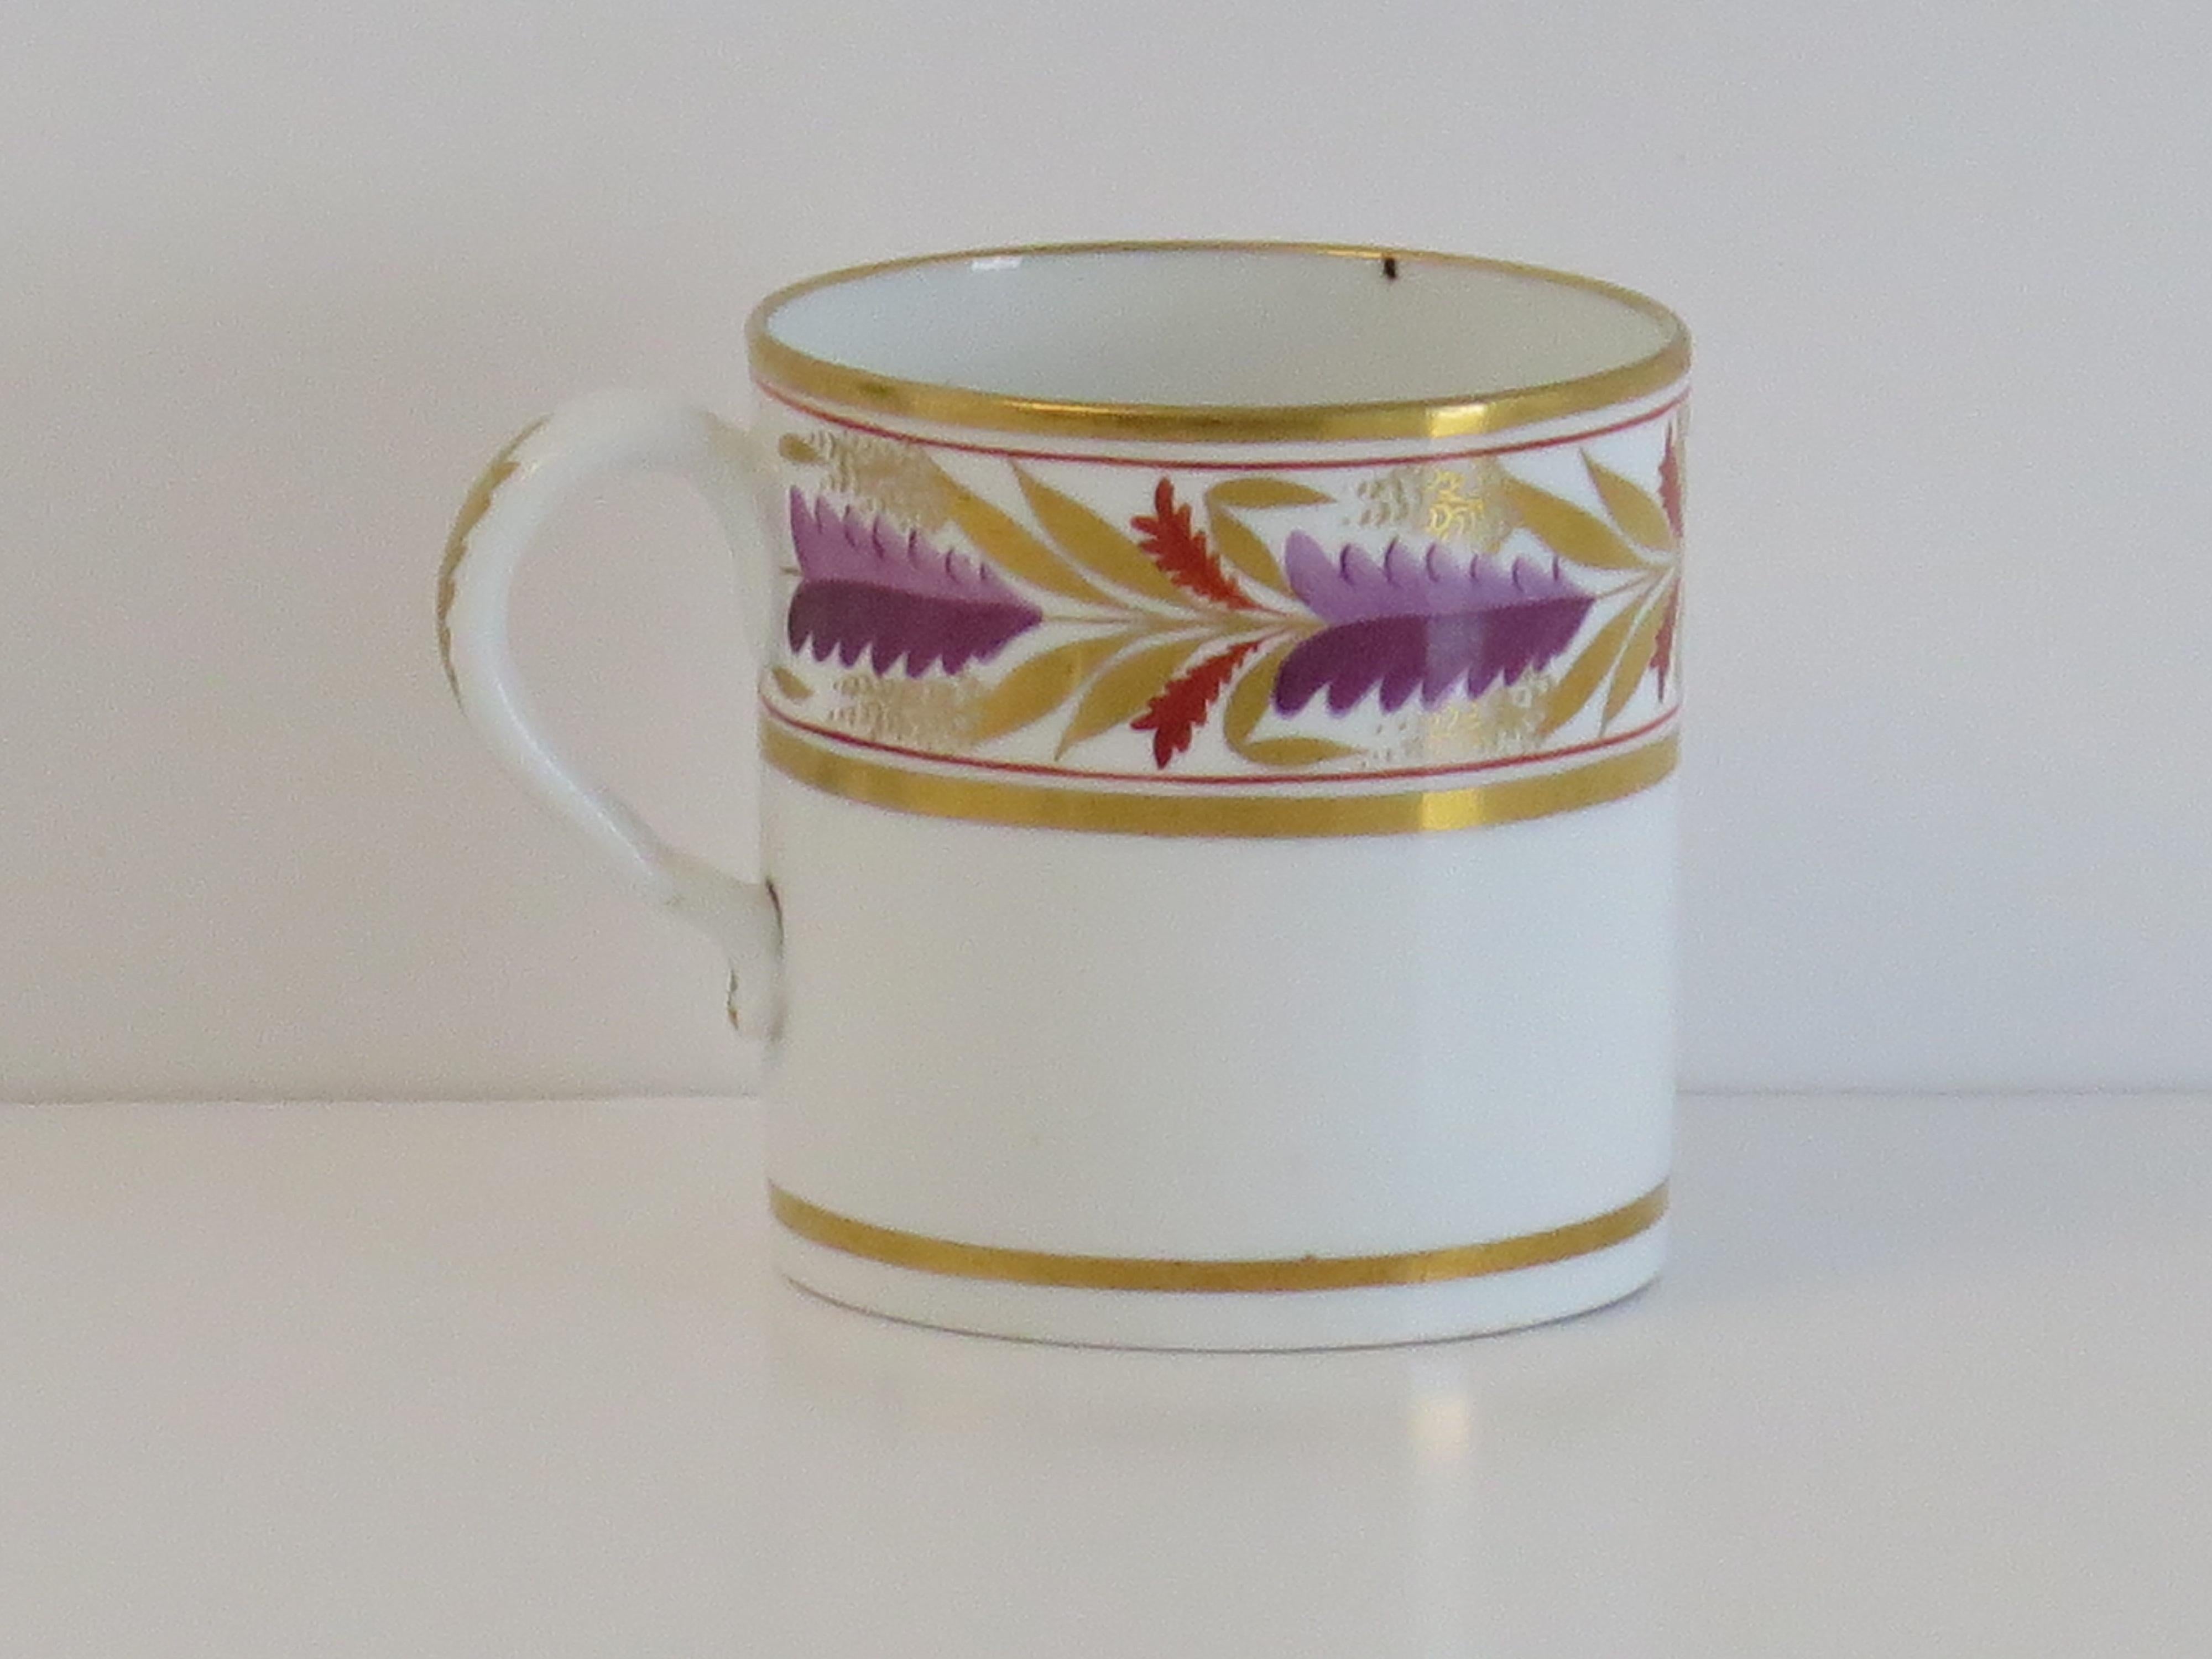 Il s'agit d'une boîte à café en porcelaine de très bonne qualité, fabriquée par Spode de Staffordshire, en Angleterre, au tout début du XIXe siècle, période George 111, vers 1805.

La canette est nominalement parallèle, avec une anse en boucle